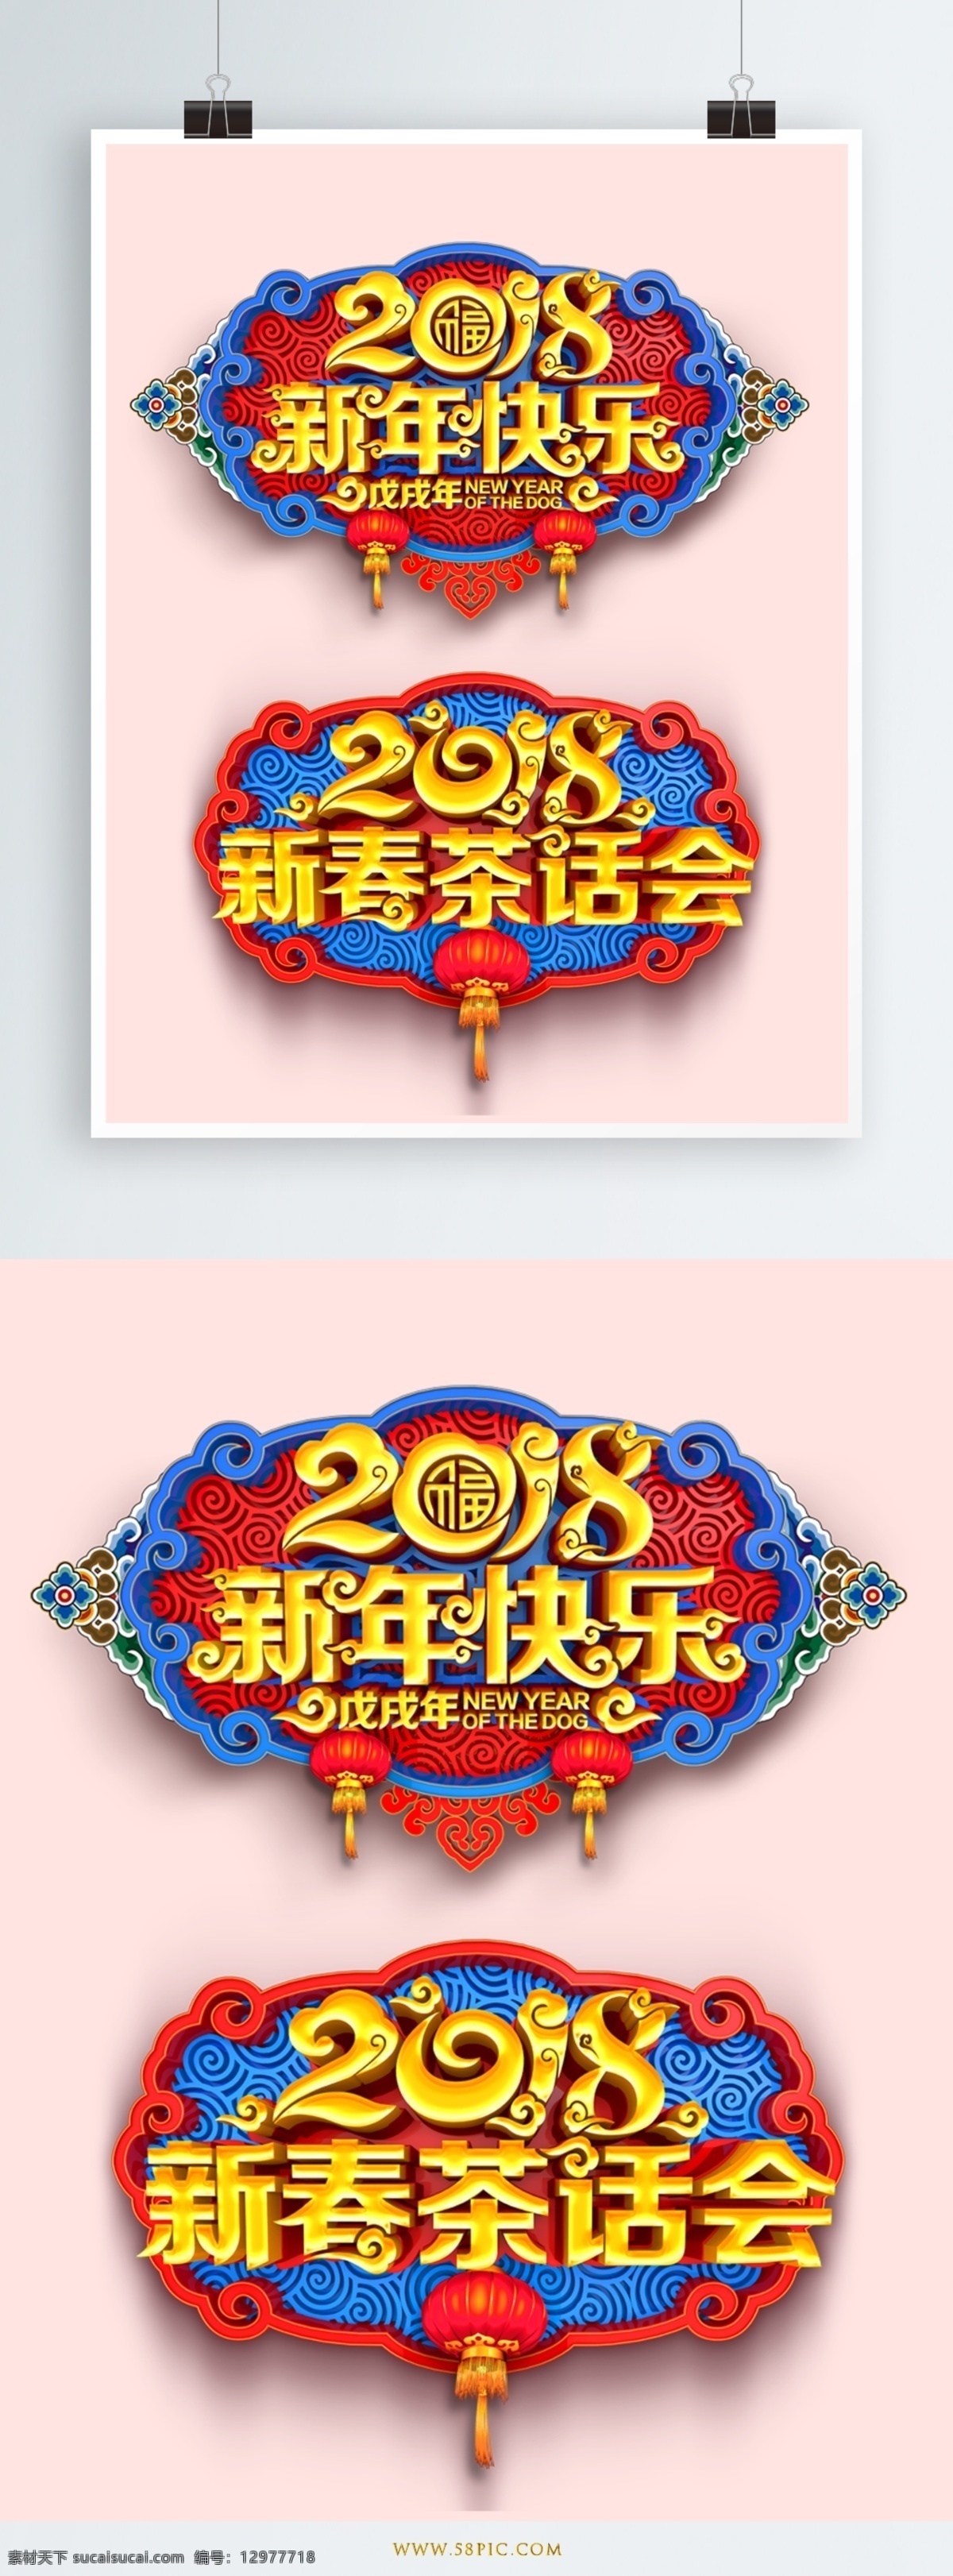 2018 新年 艺术 字 新年字体 艺术字体 字体设计 节日 灯笼 中国风底色